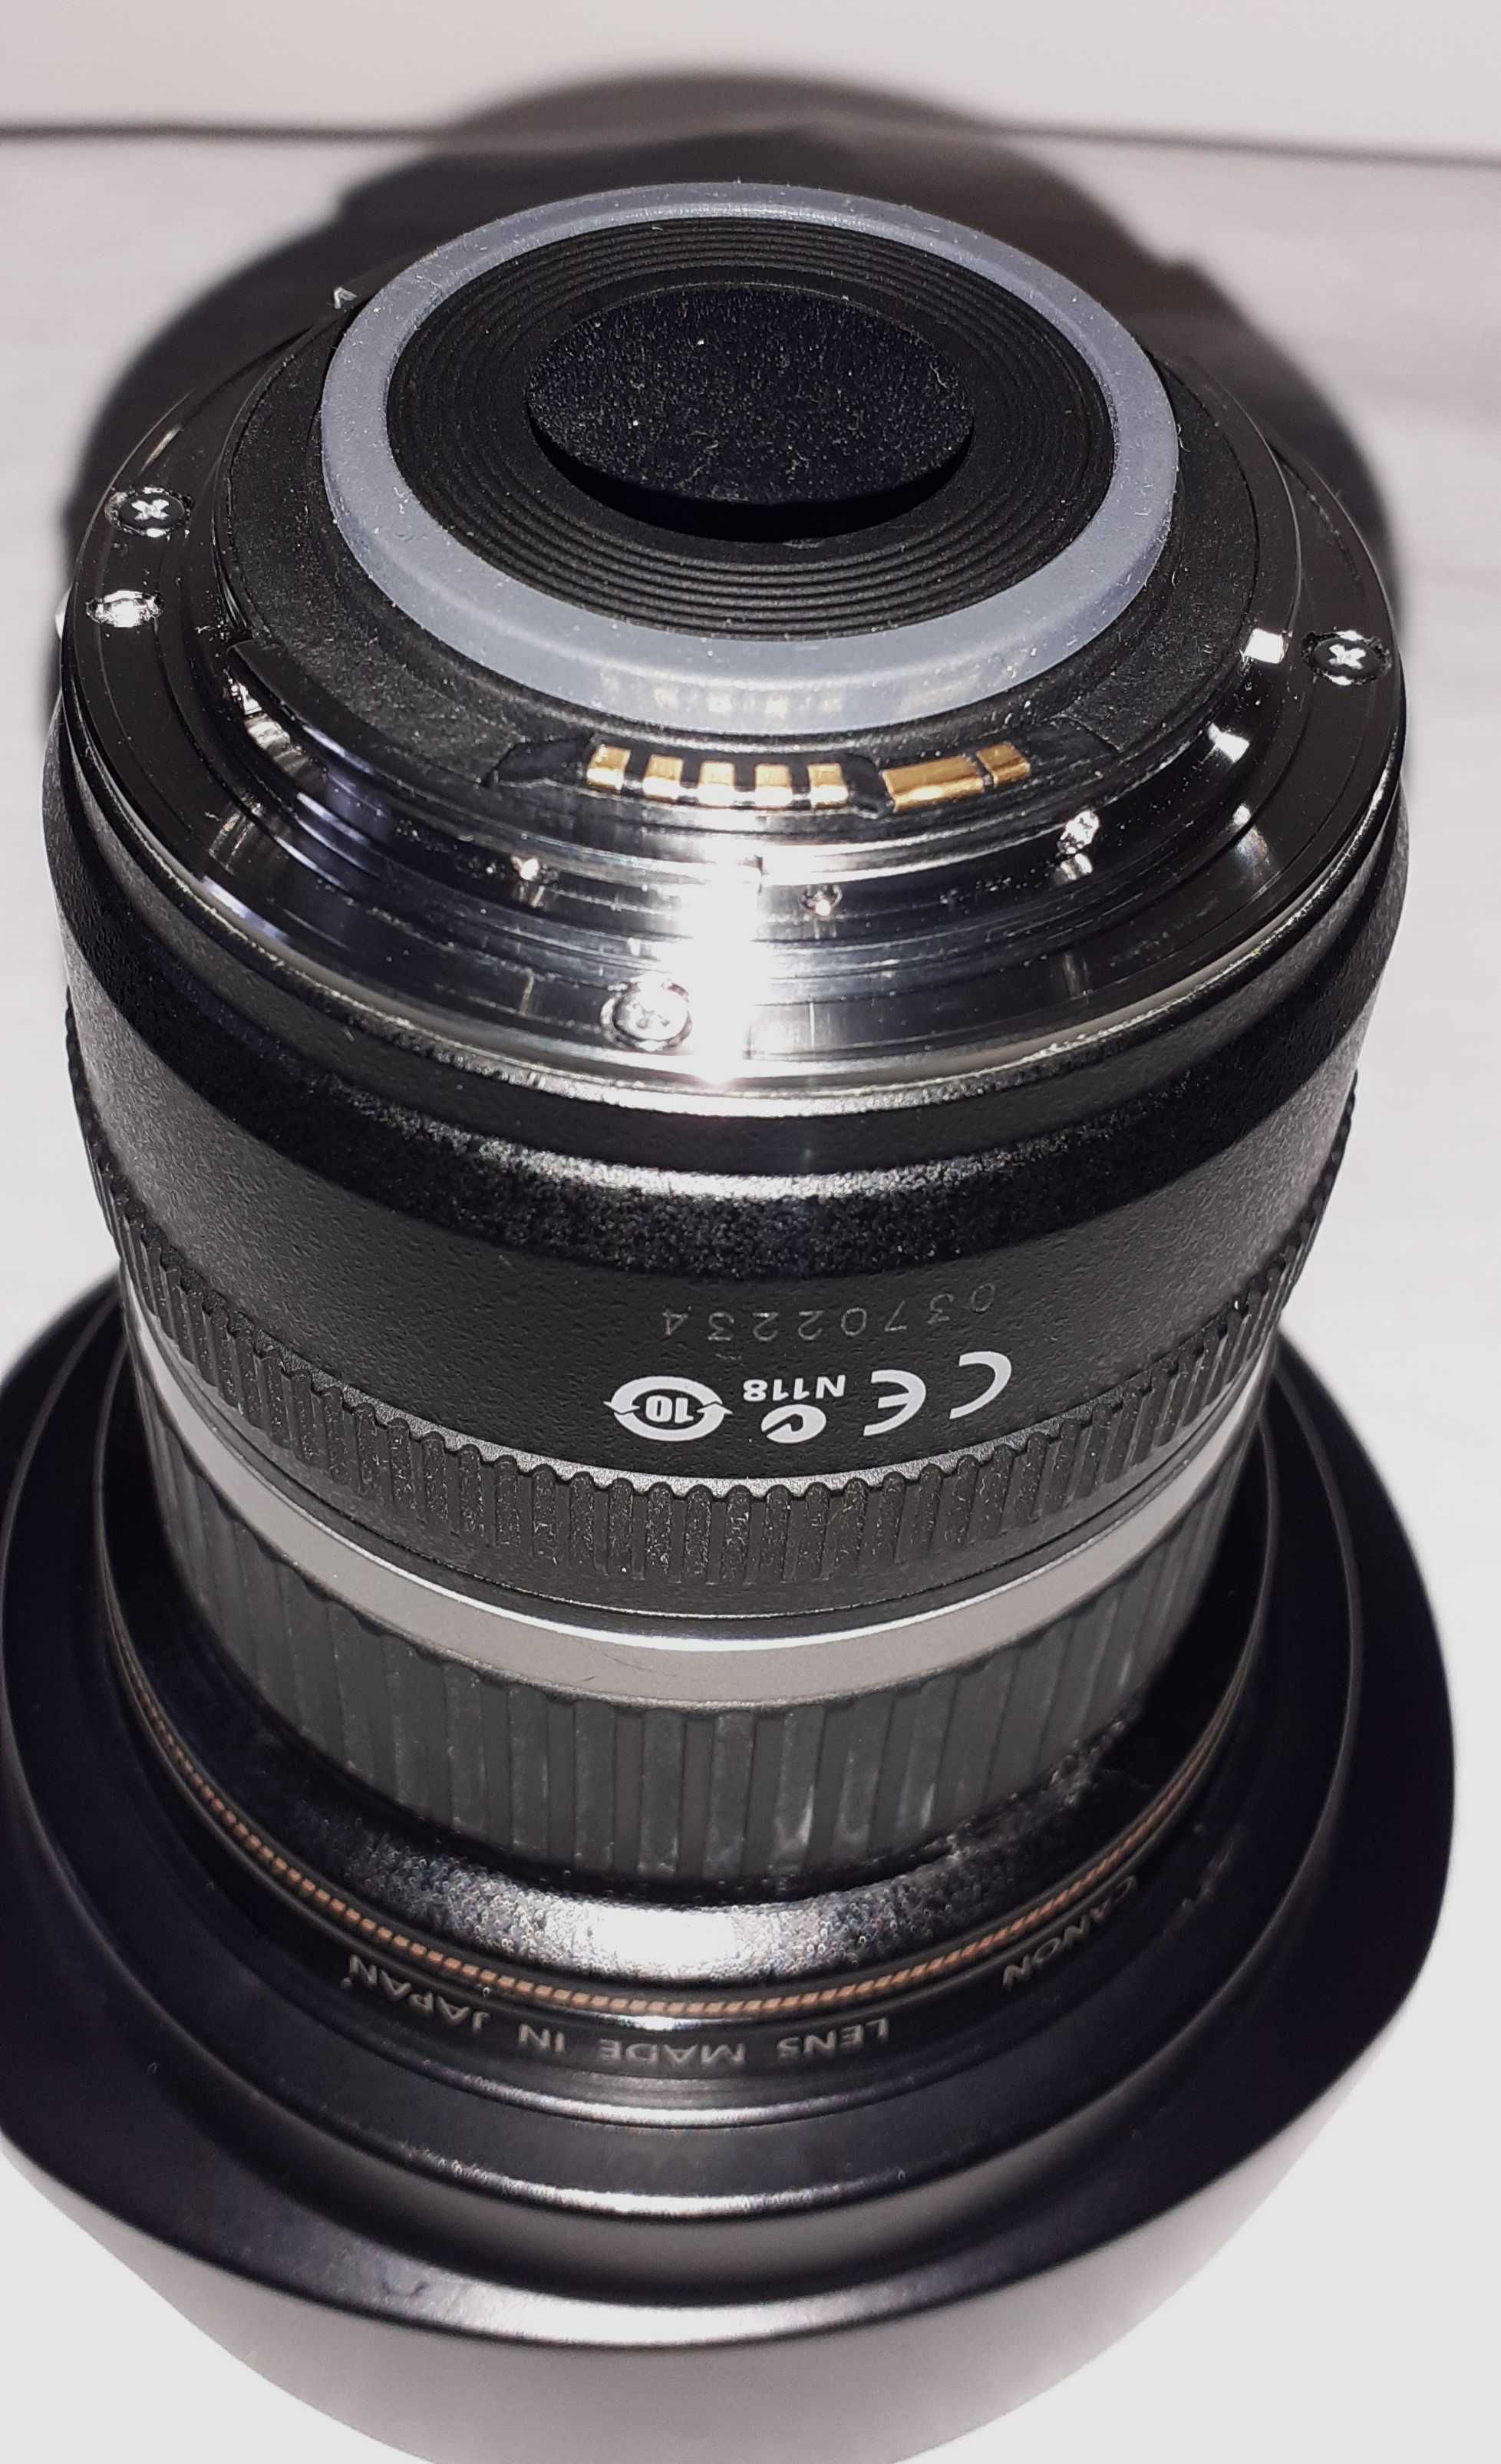 Obiectiv Canon EF-S 10-22 mm + accesorii ,impecabil!!